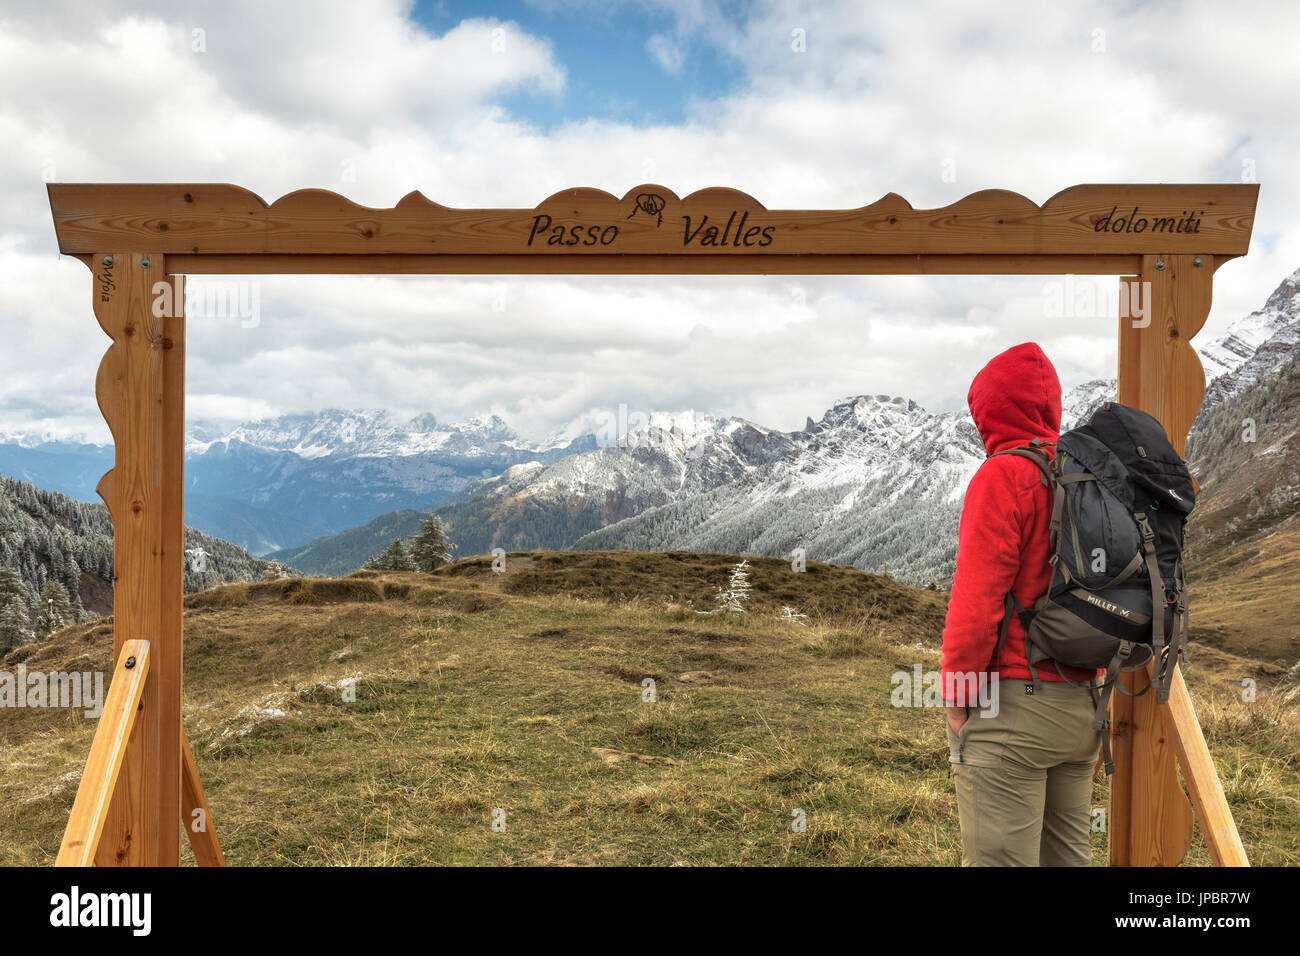 Europa, Italien, Trentino, Predazzo. Gadget für Touristen, einen Holzrahmen zu fotografieren auf dem Valles Pass, Dolomiten Stockfoto